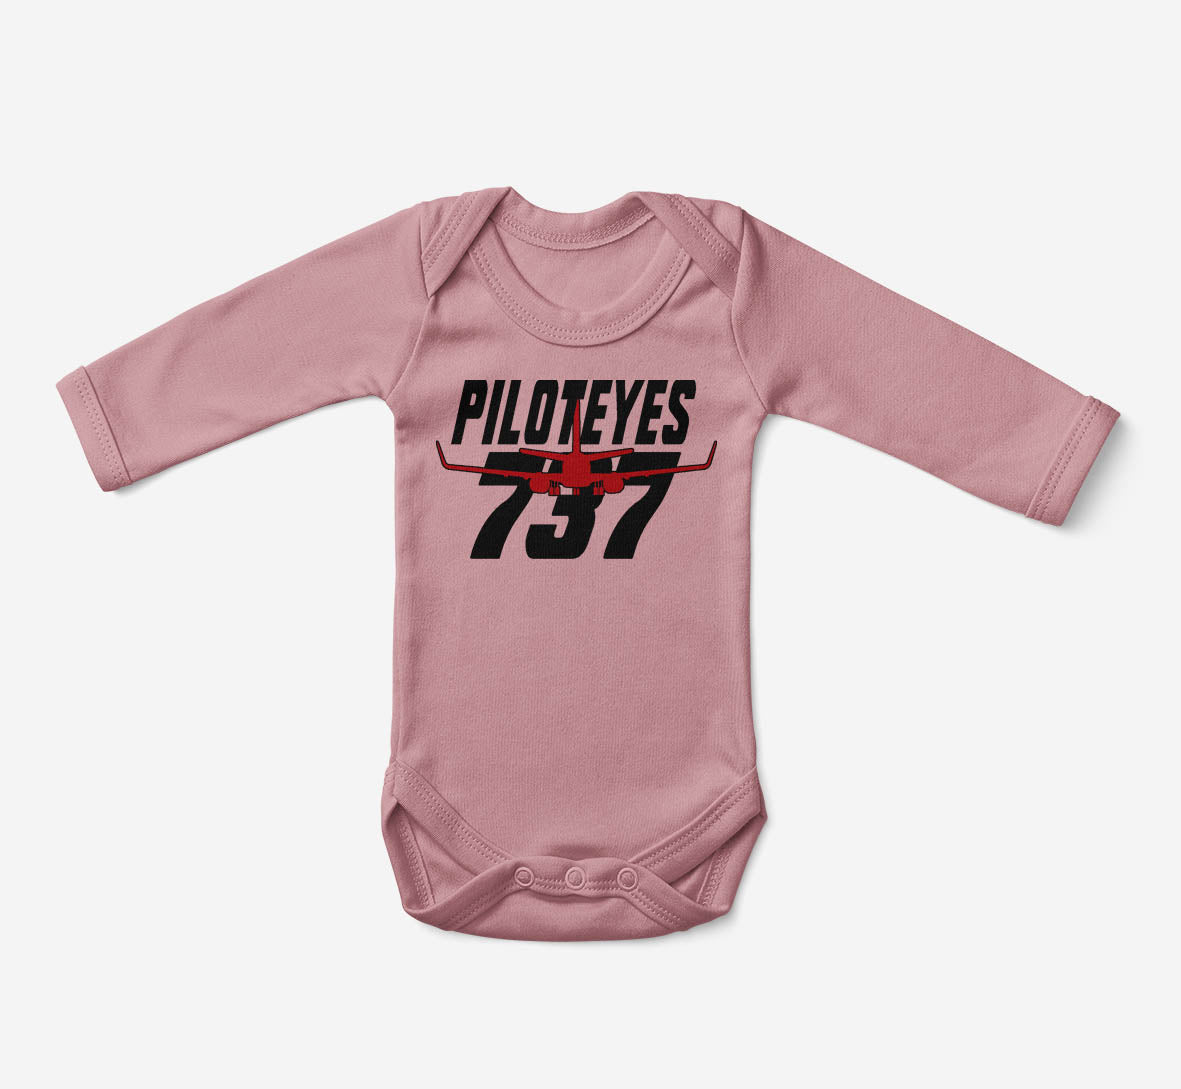 Amazing Piloteyes737 Designed Baby Bodysuits